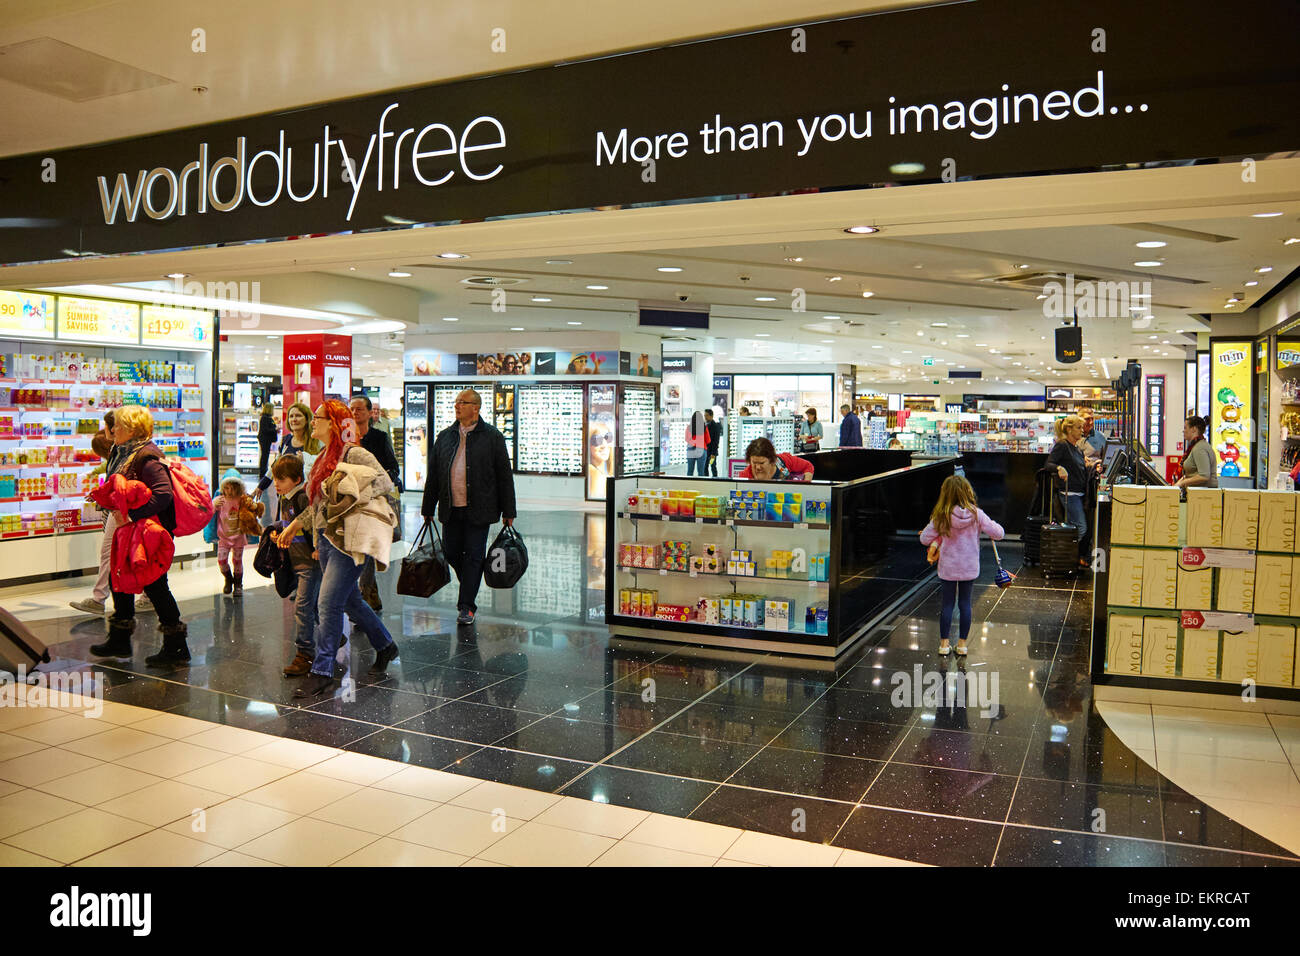 World Duty Free Store Birmingham Airport UK Stock Photo